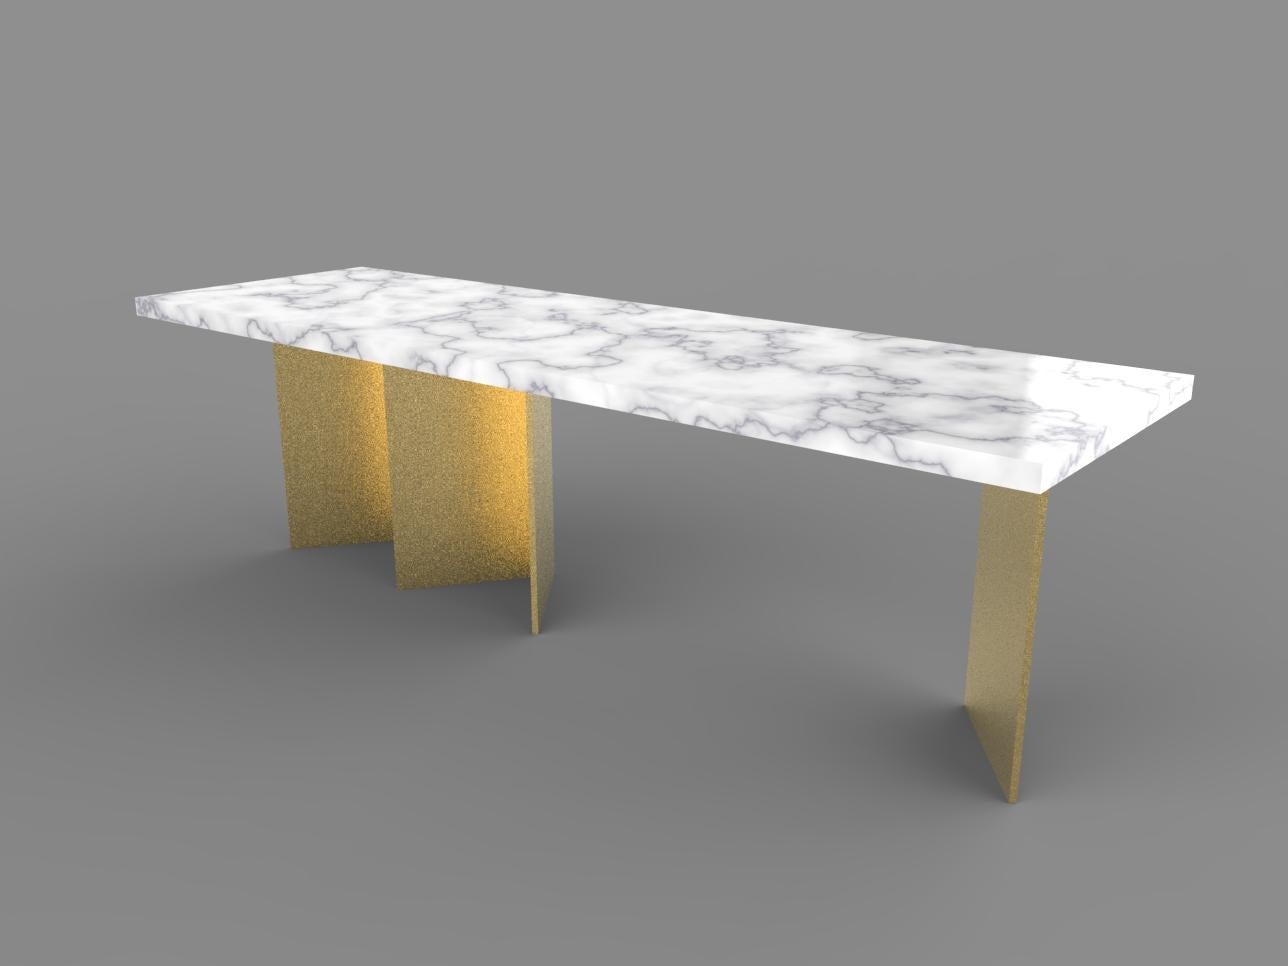 Der maßgefertigte Tisch Book wurde von Brigitte Legendre entworfen. Die rechteckige Tischplatte ist vollständig aus handgeschnittenem Carrara-Marmor gefertigt; die Füße sind aus lackiertem Holz und wirken wie ein 